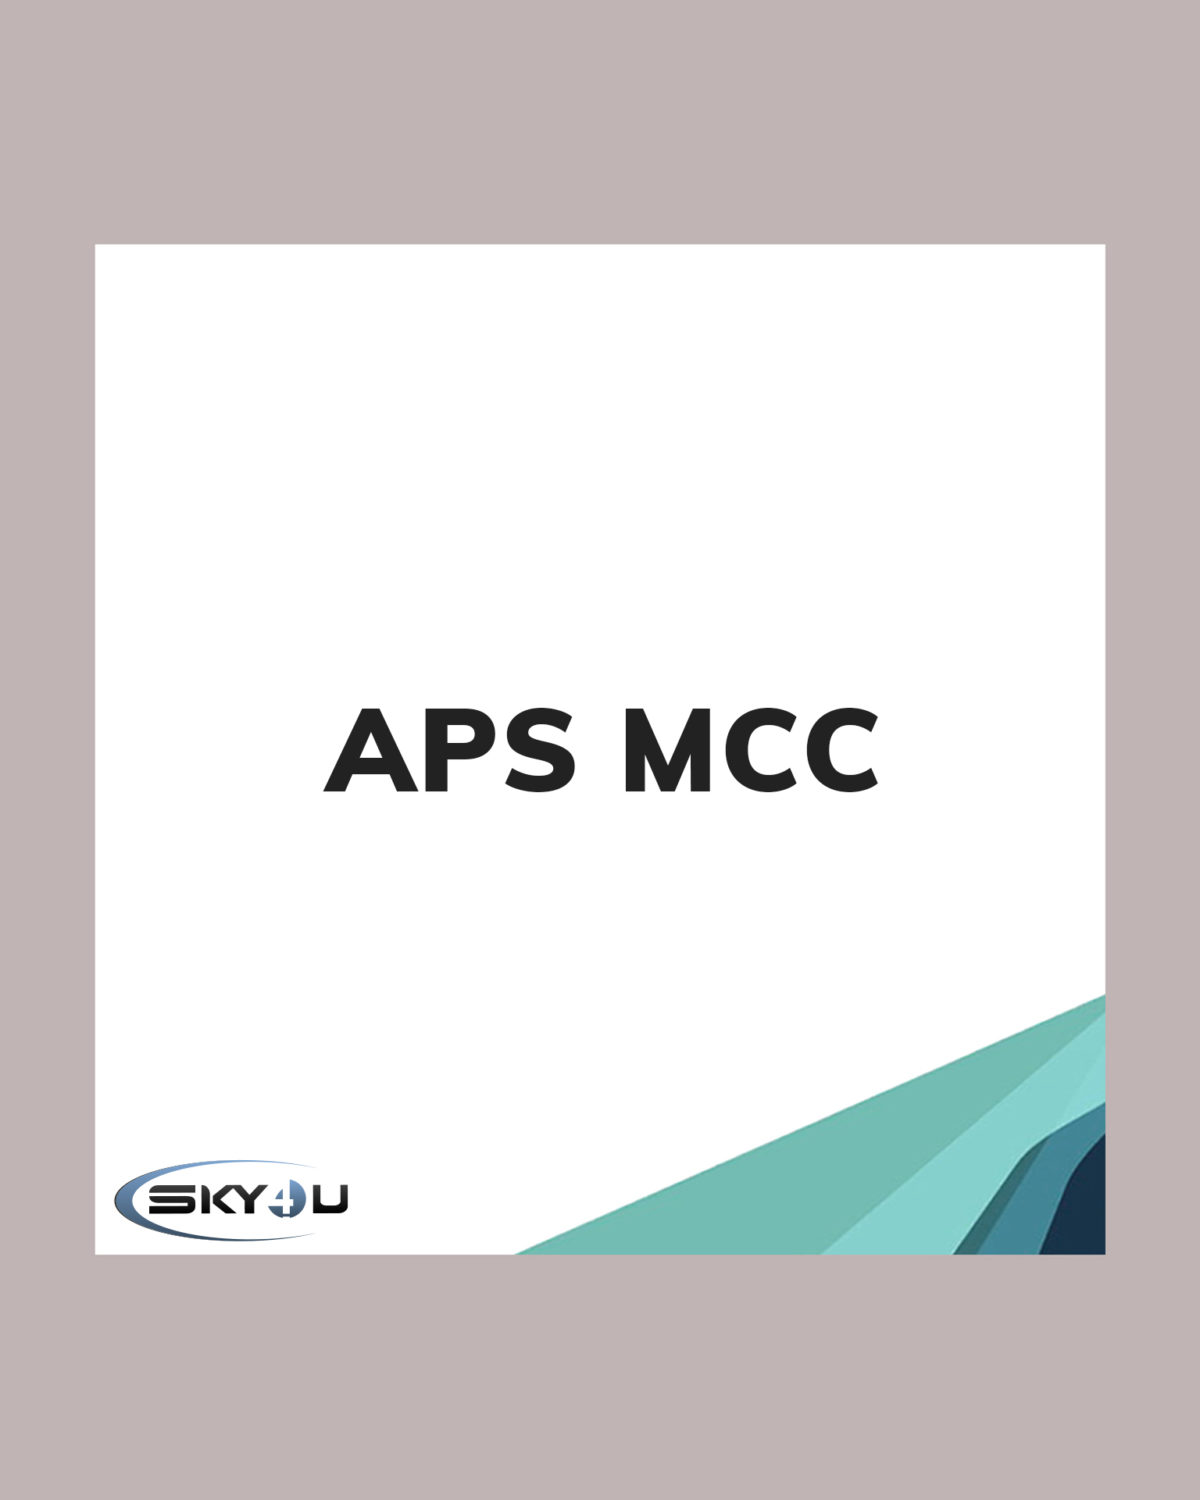 APS MCC